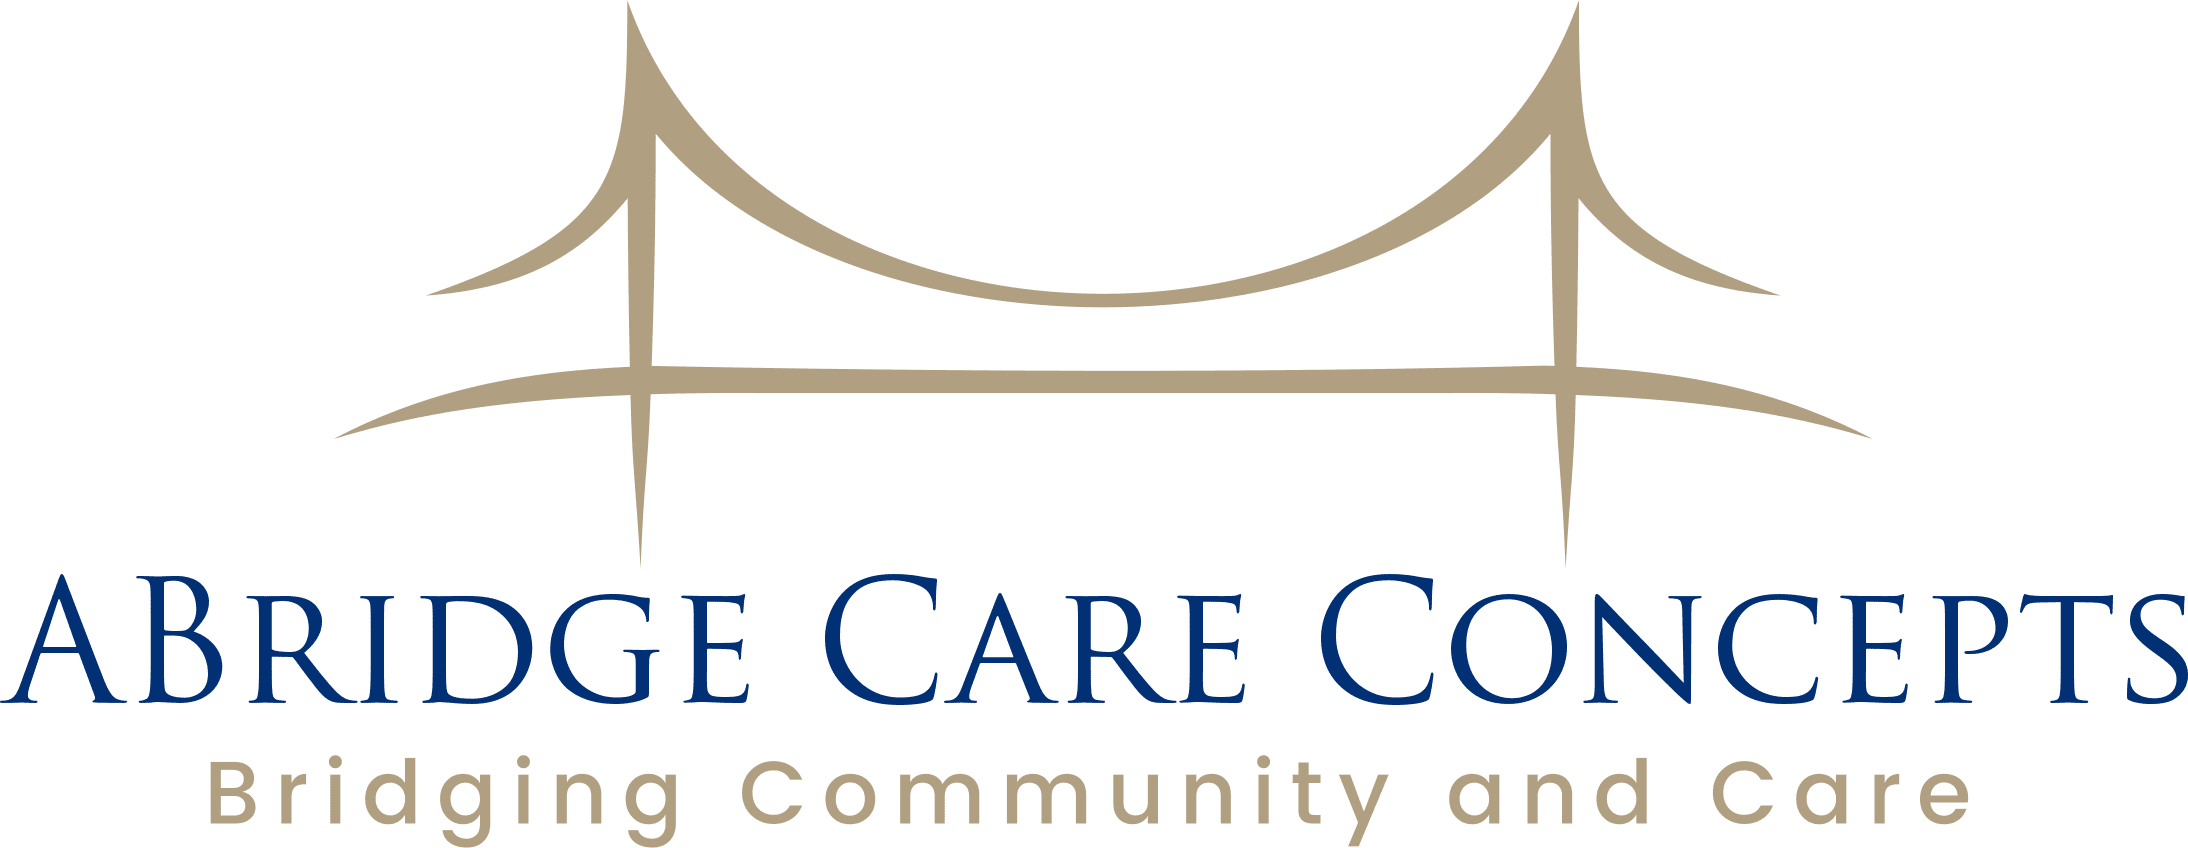 ABridge Care Concepts